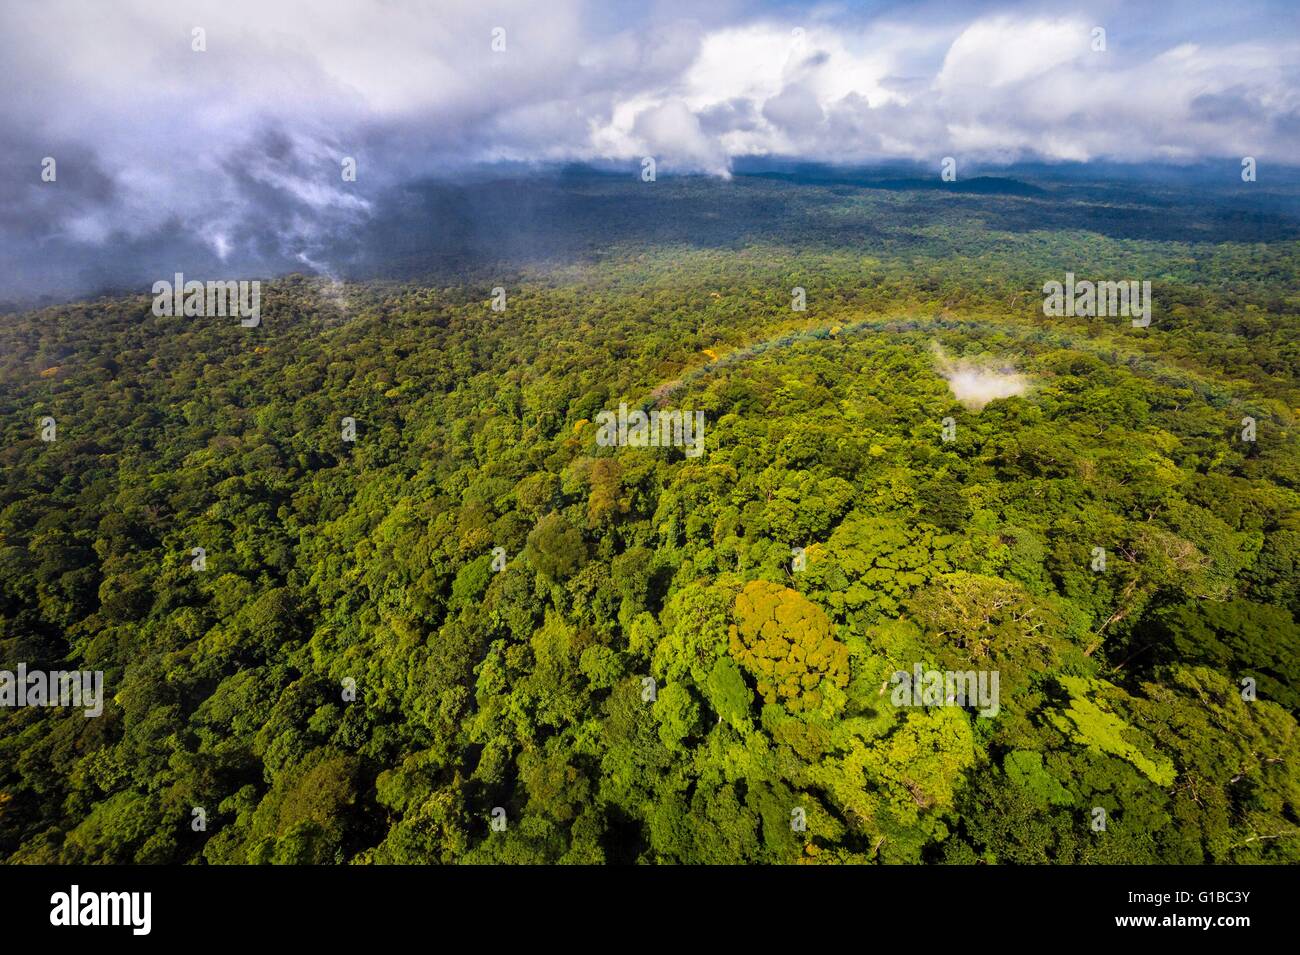 France, Guyana, Guyane Française, cœur du parc Amazonien, donnant sur la plaine amazonienne depuis la chaîne du Mont Itoupe tabulaire (830 m), saison des pluies, vue aérienne à partir d'hélicoptères de transport de l'équipe scientifique Banque D'Images